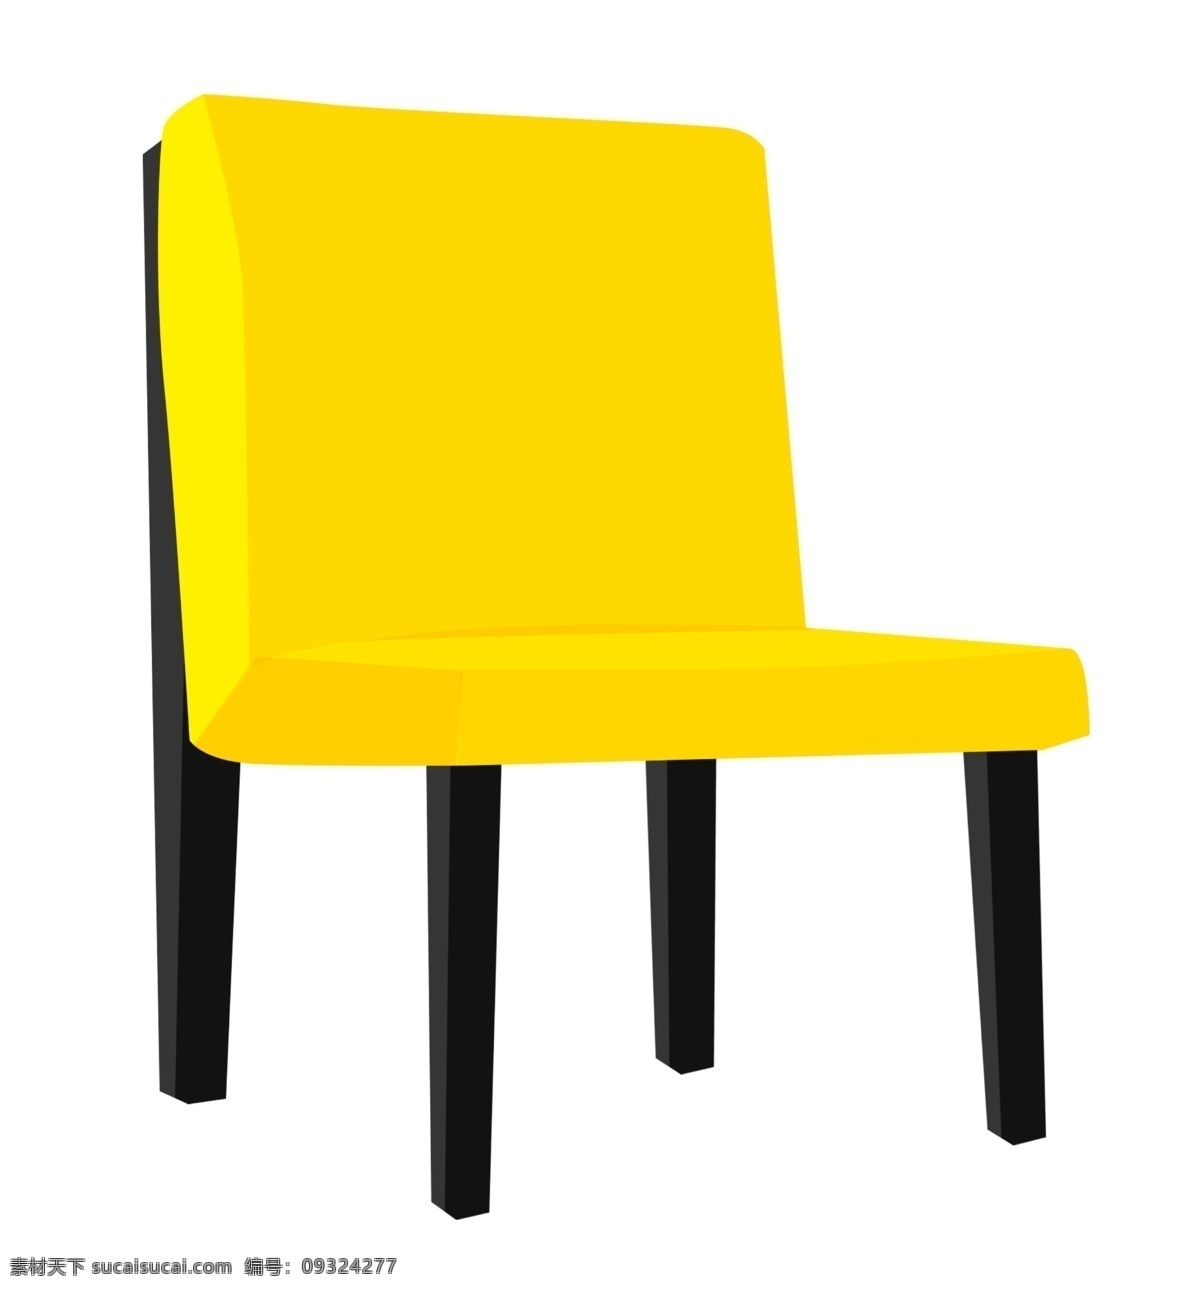 黄色 椅子 卡通 插画 黄色的椅子 卡通插画 家具插画 椅子插画 家具椅子 居家用品 漂亮的椅子